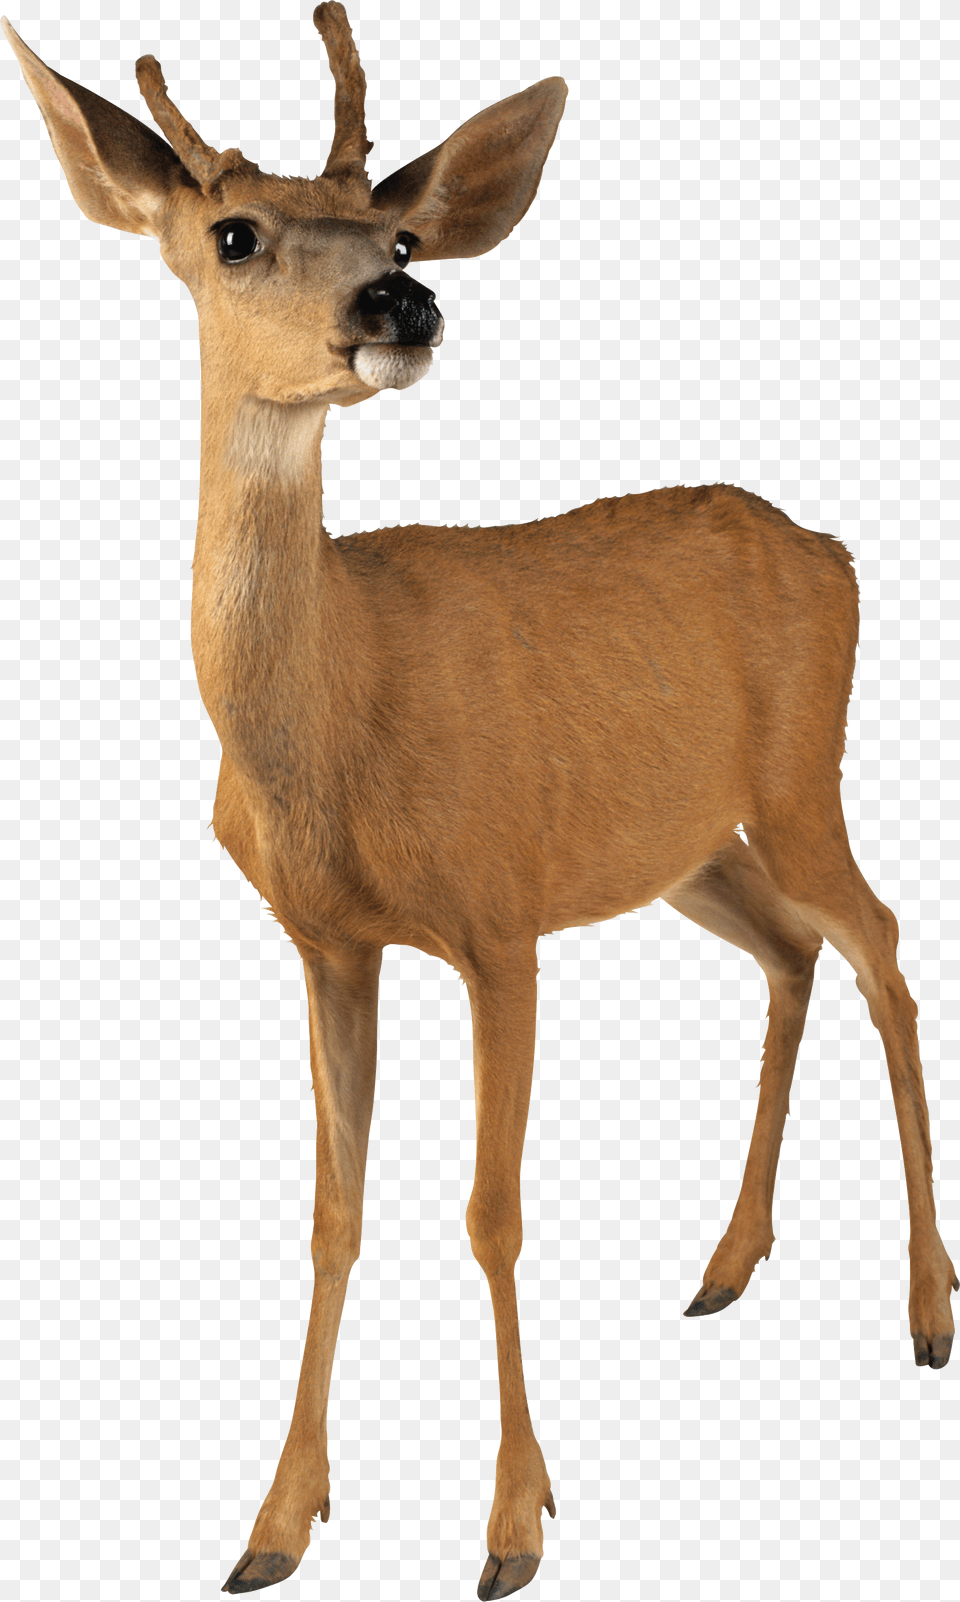 Deer, Animal, Mammal, Wildlife, Antelope Free Png